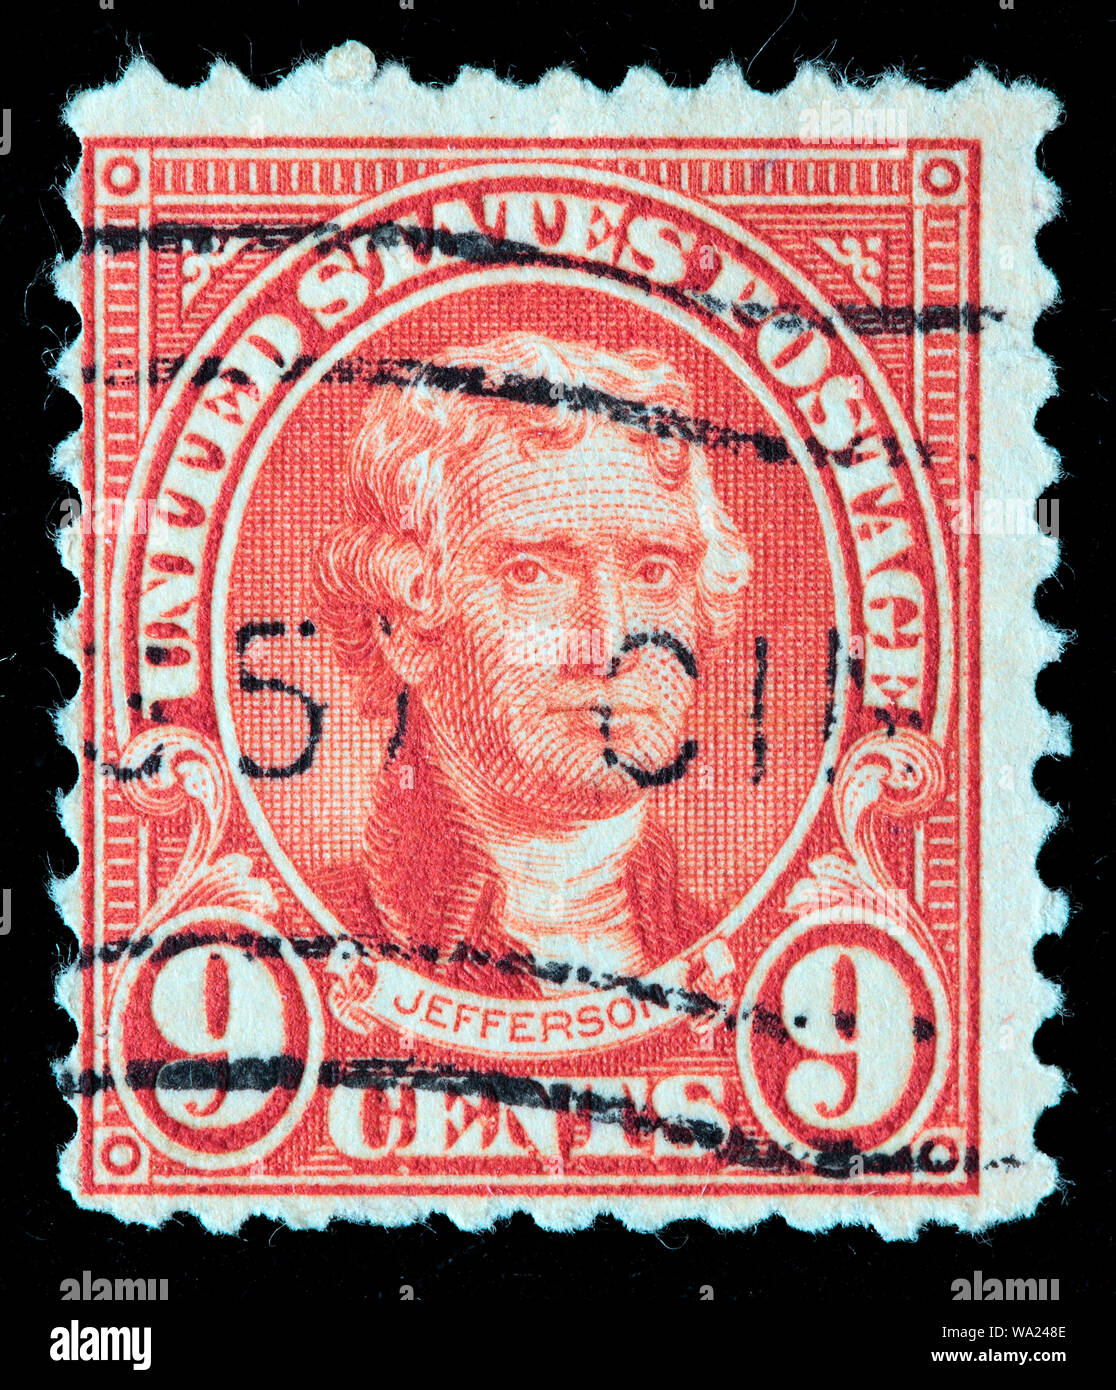 Thomas Jefferson (1743-1826), President of USA, postage stamp, USA, 1923 Stock Photo